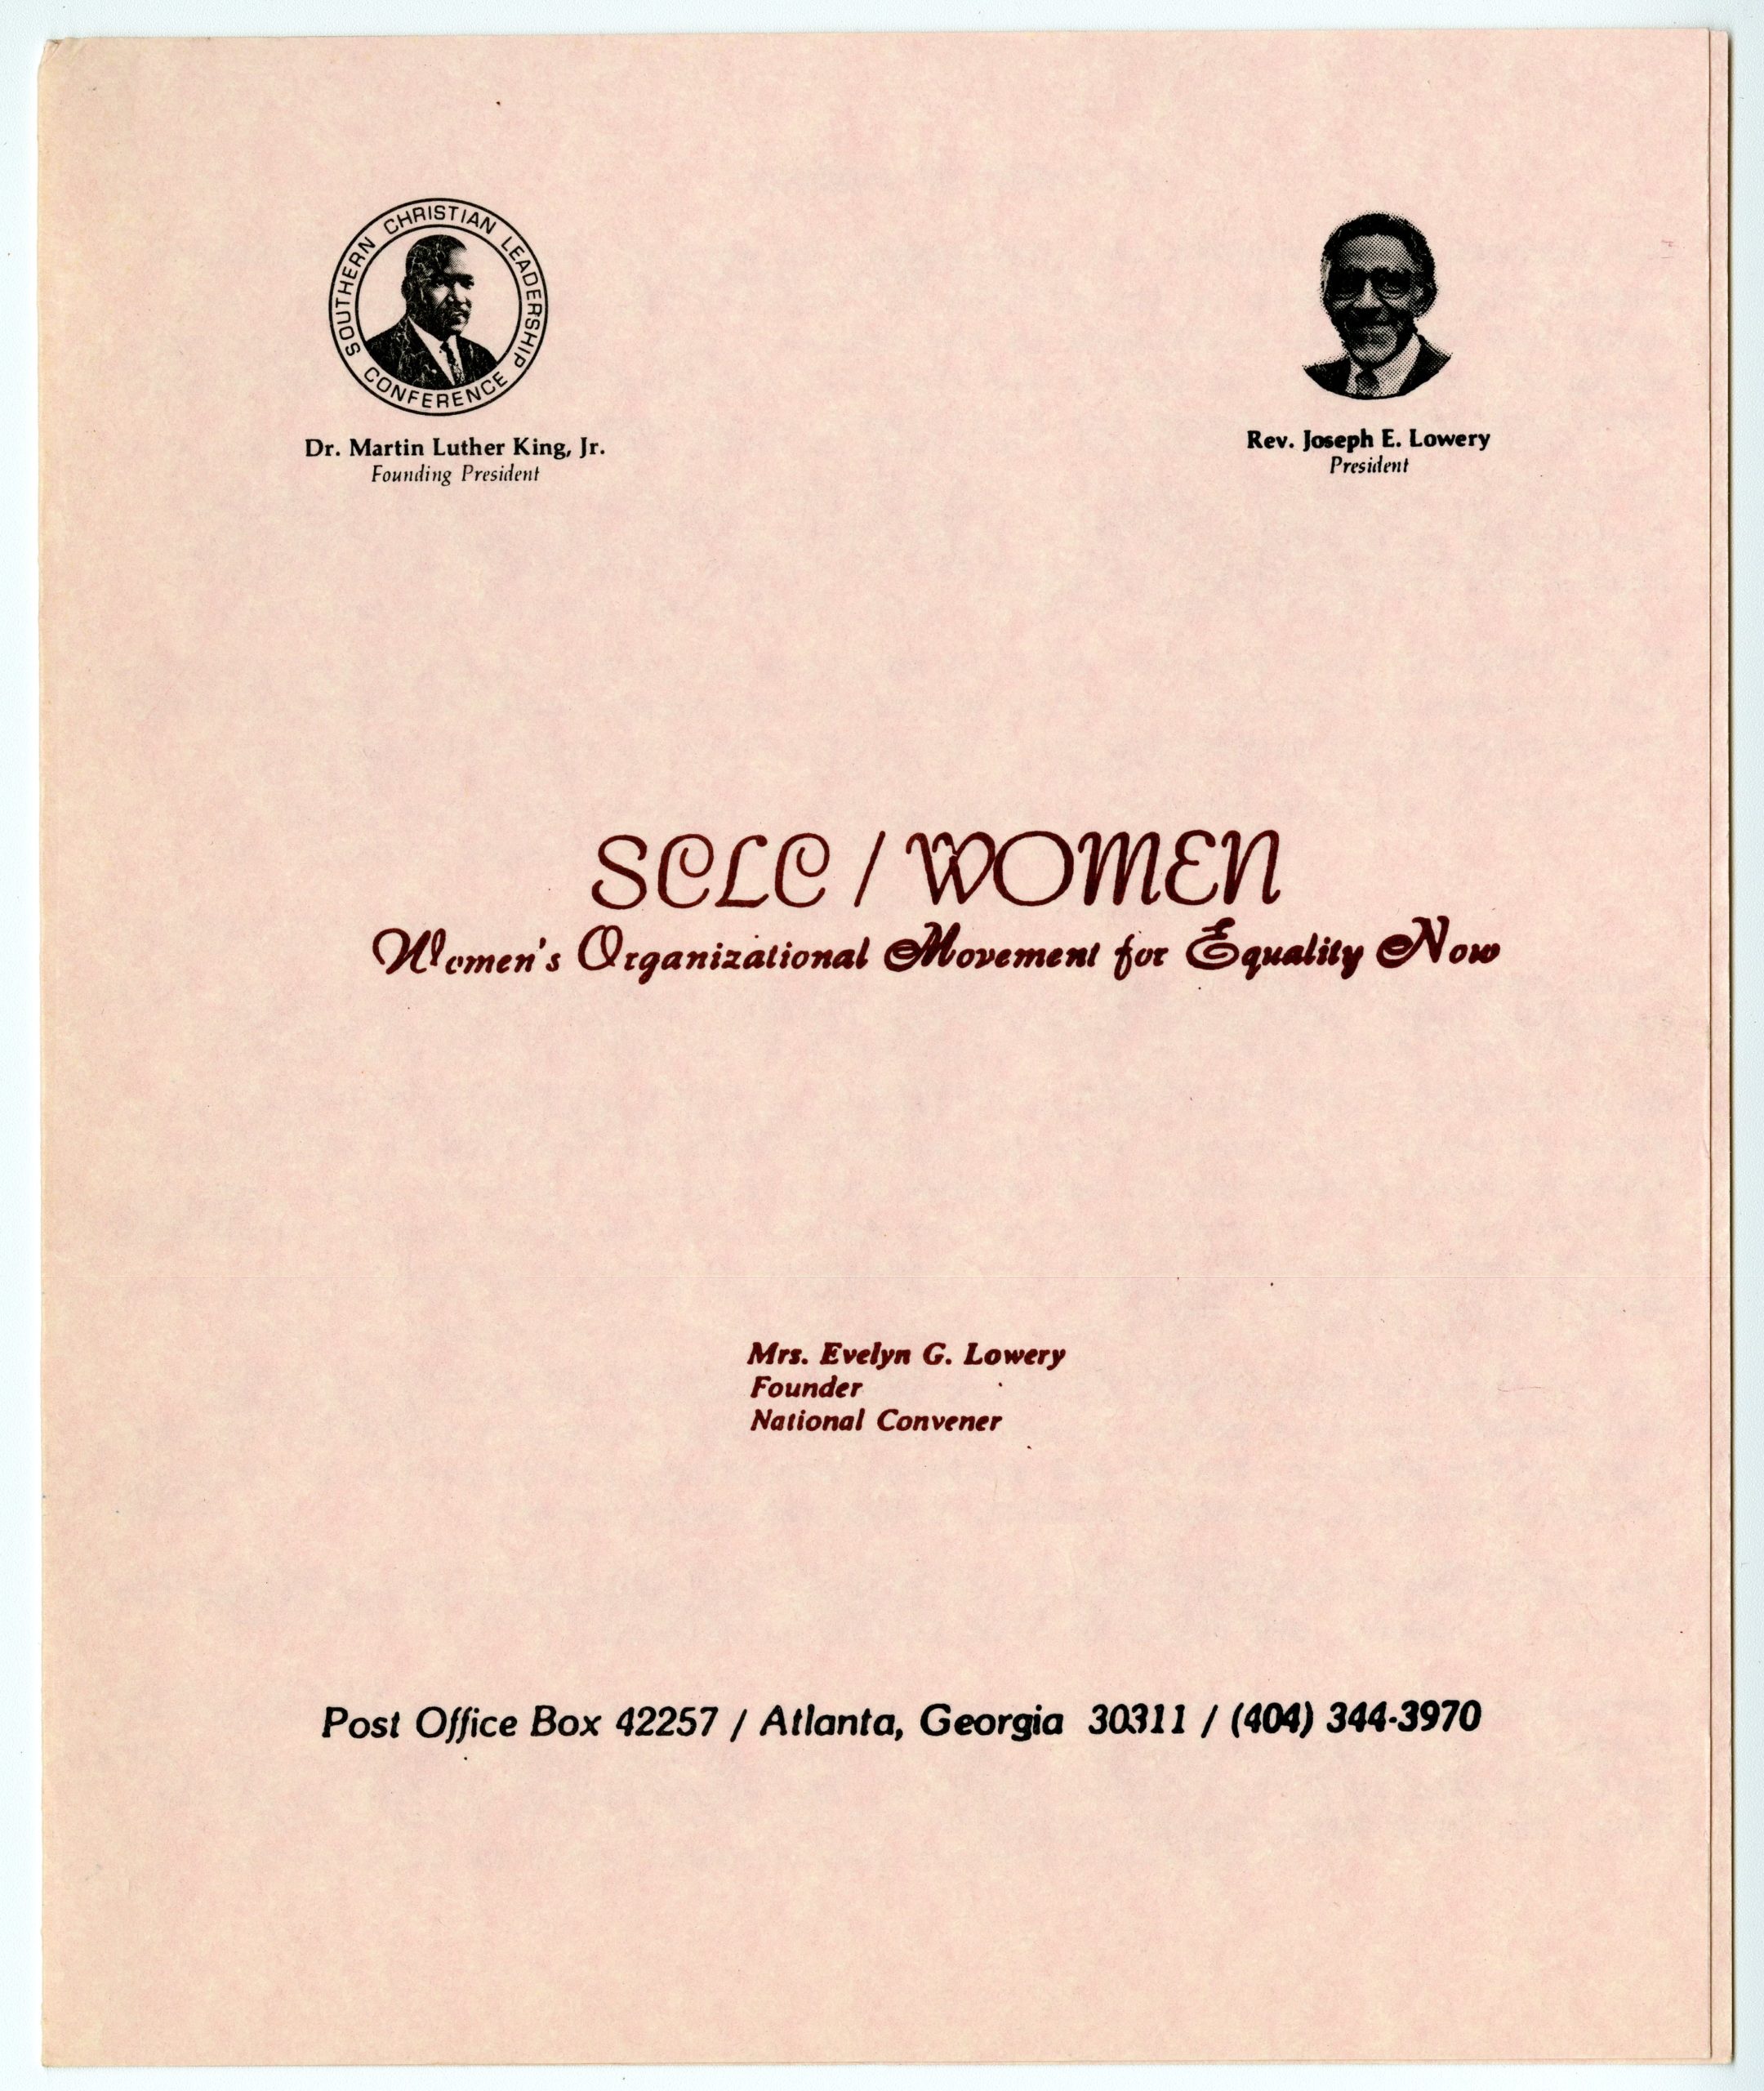 Brochure, SCLC/WOMEN